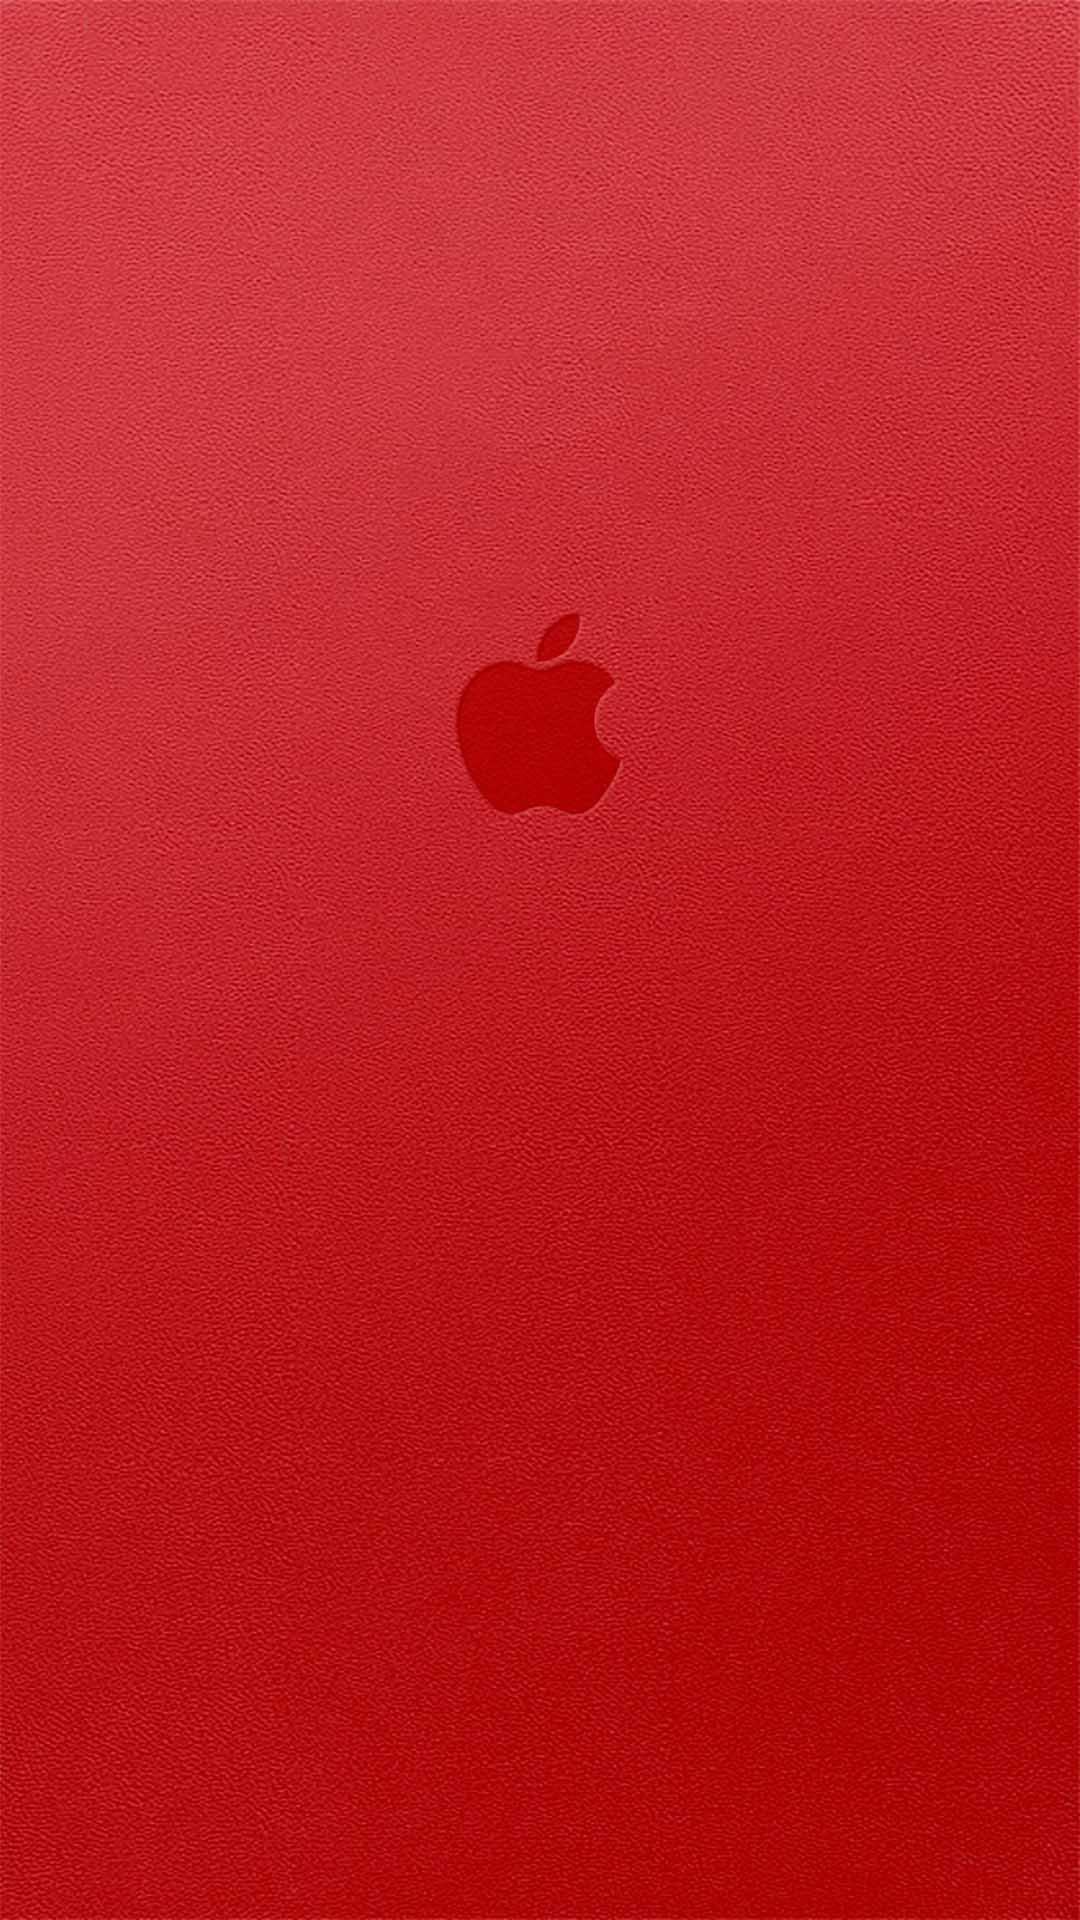 100 Wallpaper Iphone 7 Red Hinhanhsieudep Net